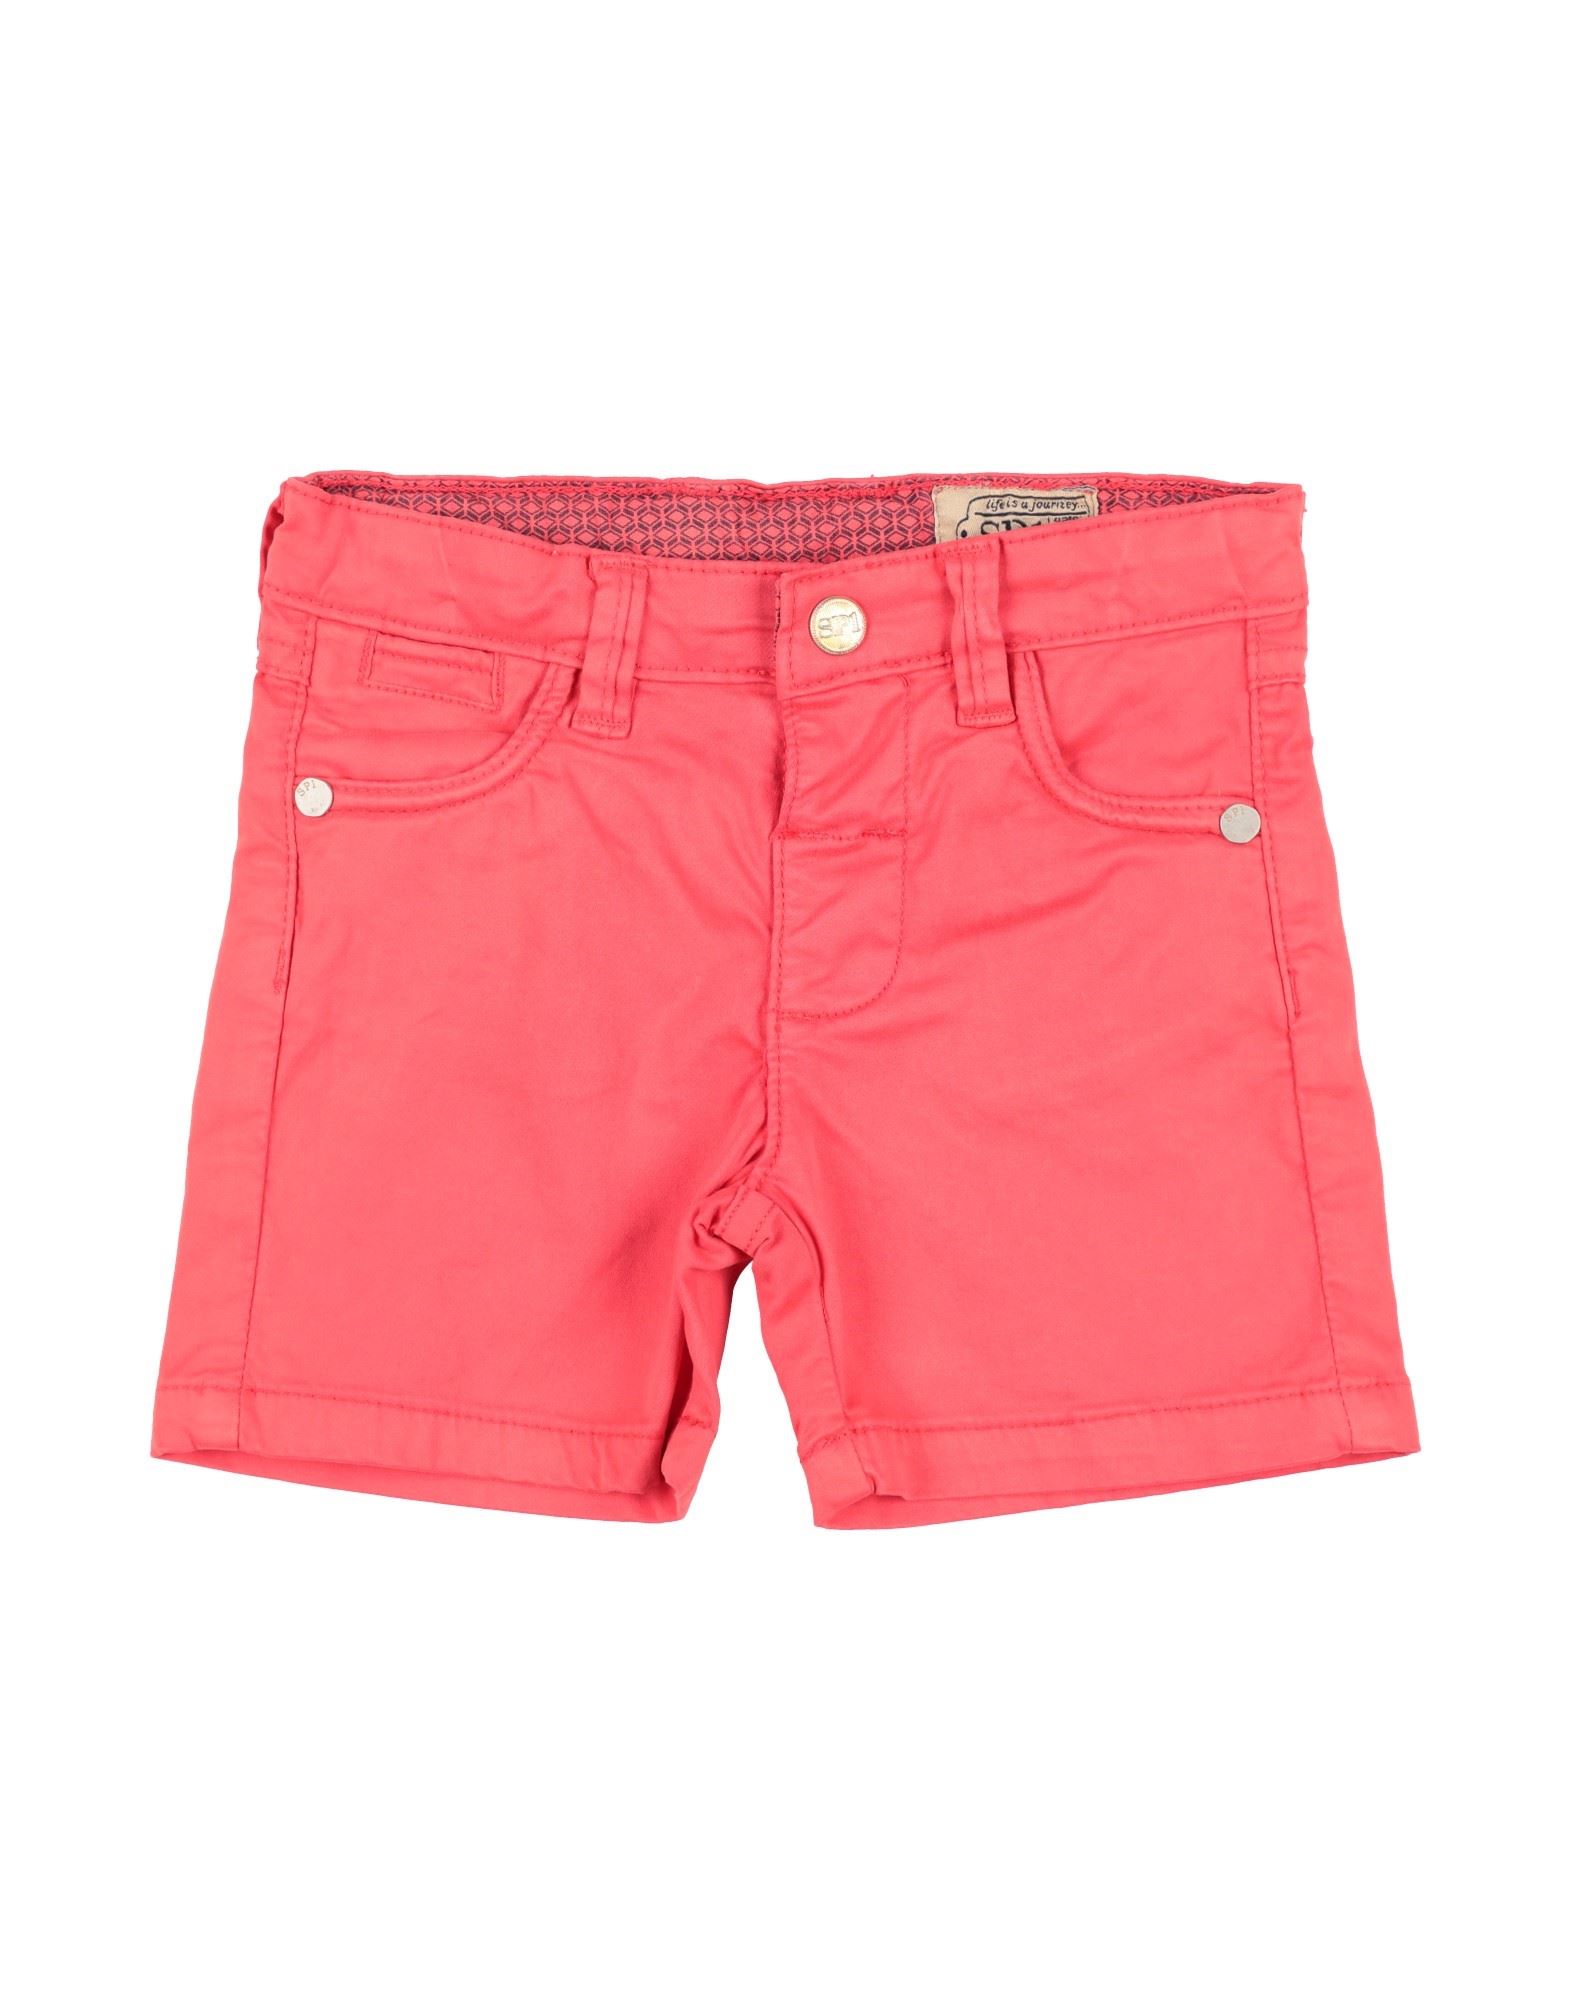 Sp1 Kids'  Newborn Boy Shorts & Bermuda Shorts Red Size 3 Cotton, Elastane